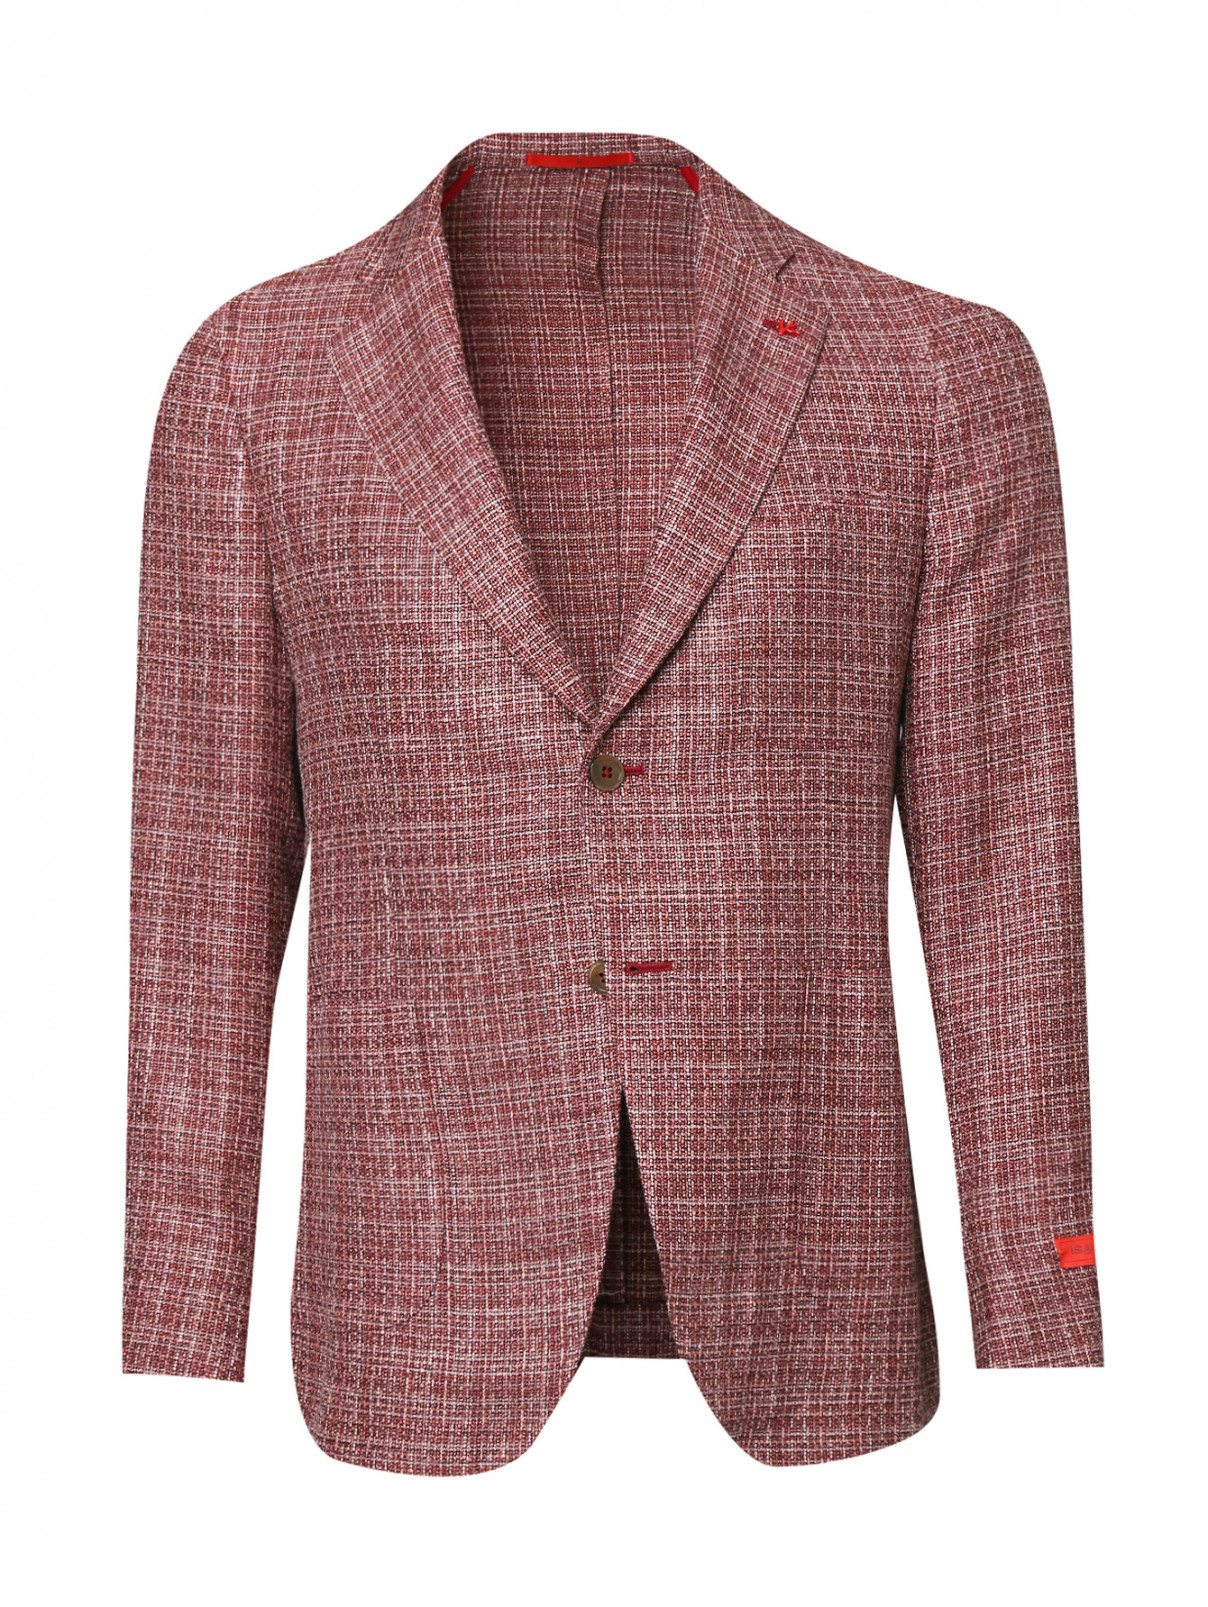 Пиджак из шерсти шелка и льна с узором Isaia  –  Общий вид  – Цвет:  Красный